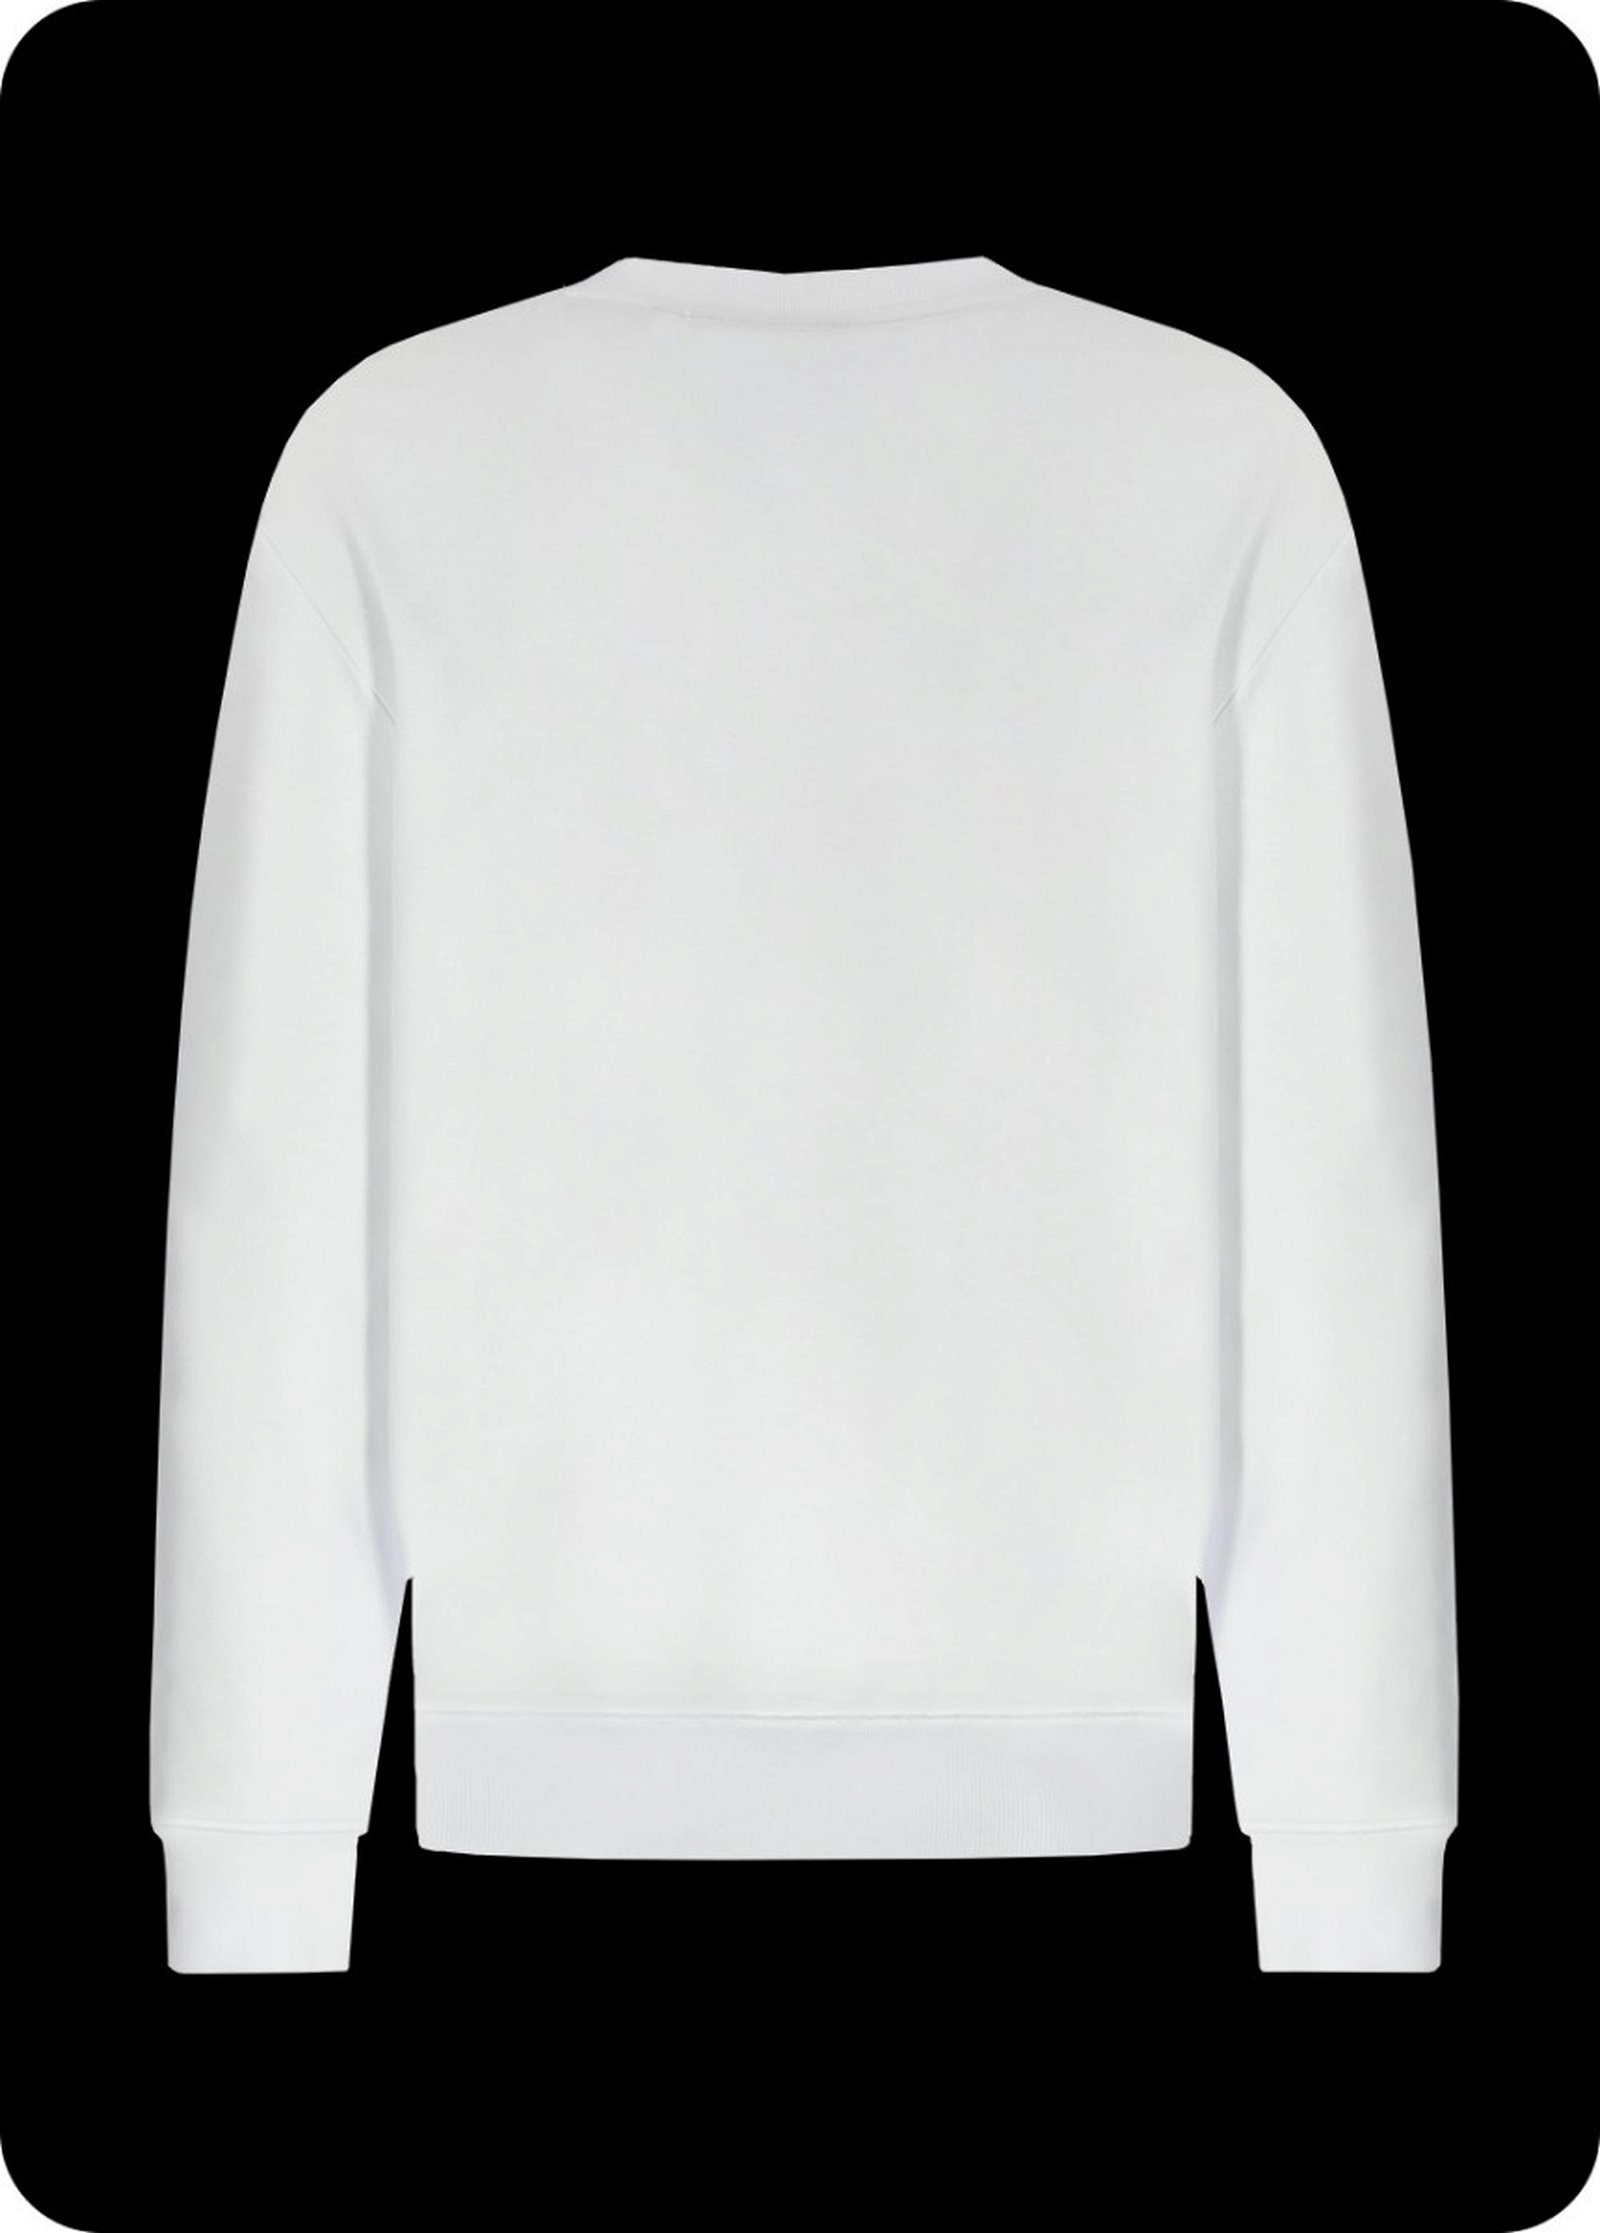 Erkek Sweatshirt 23025 1000 - 1000 WHITE